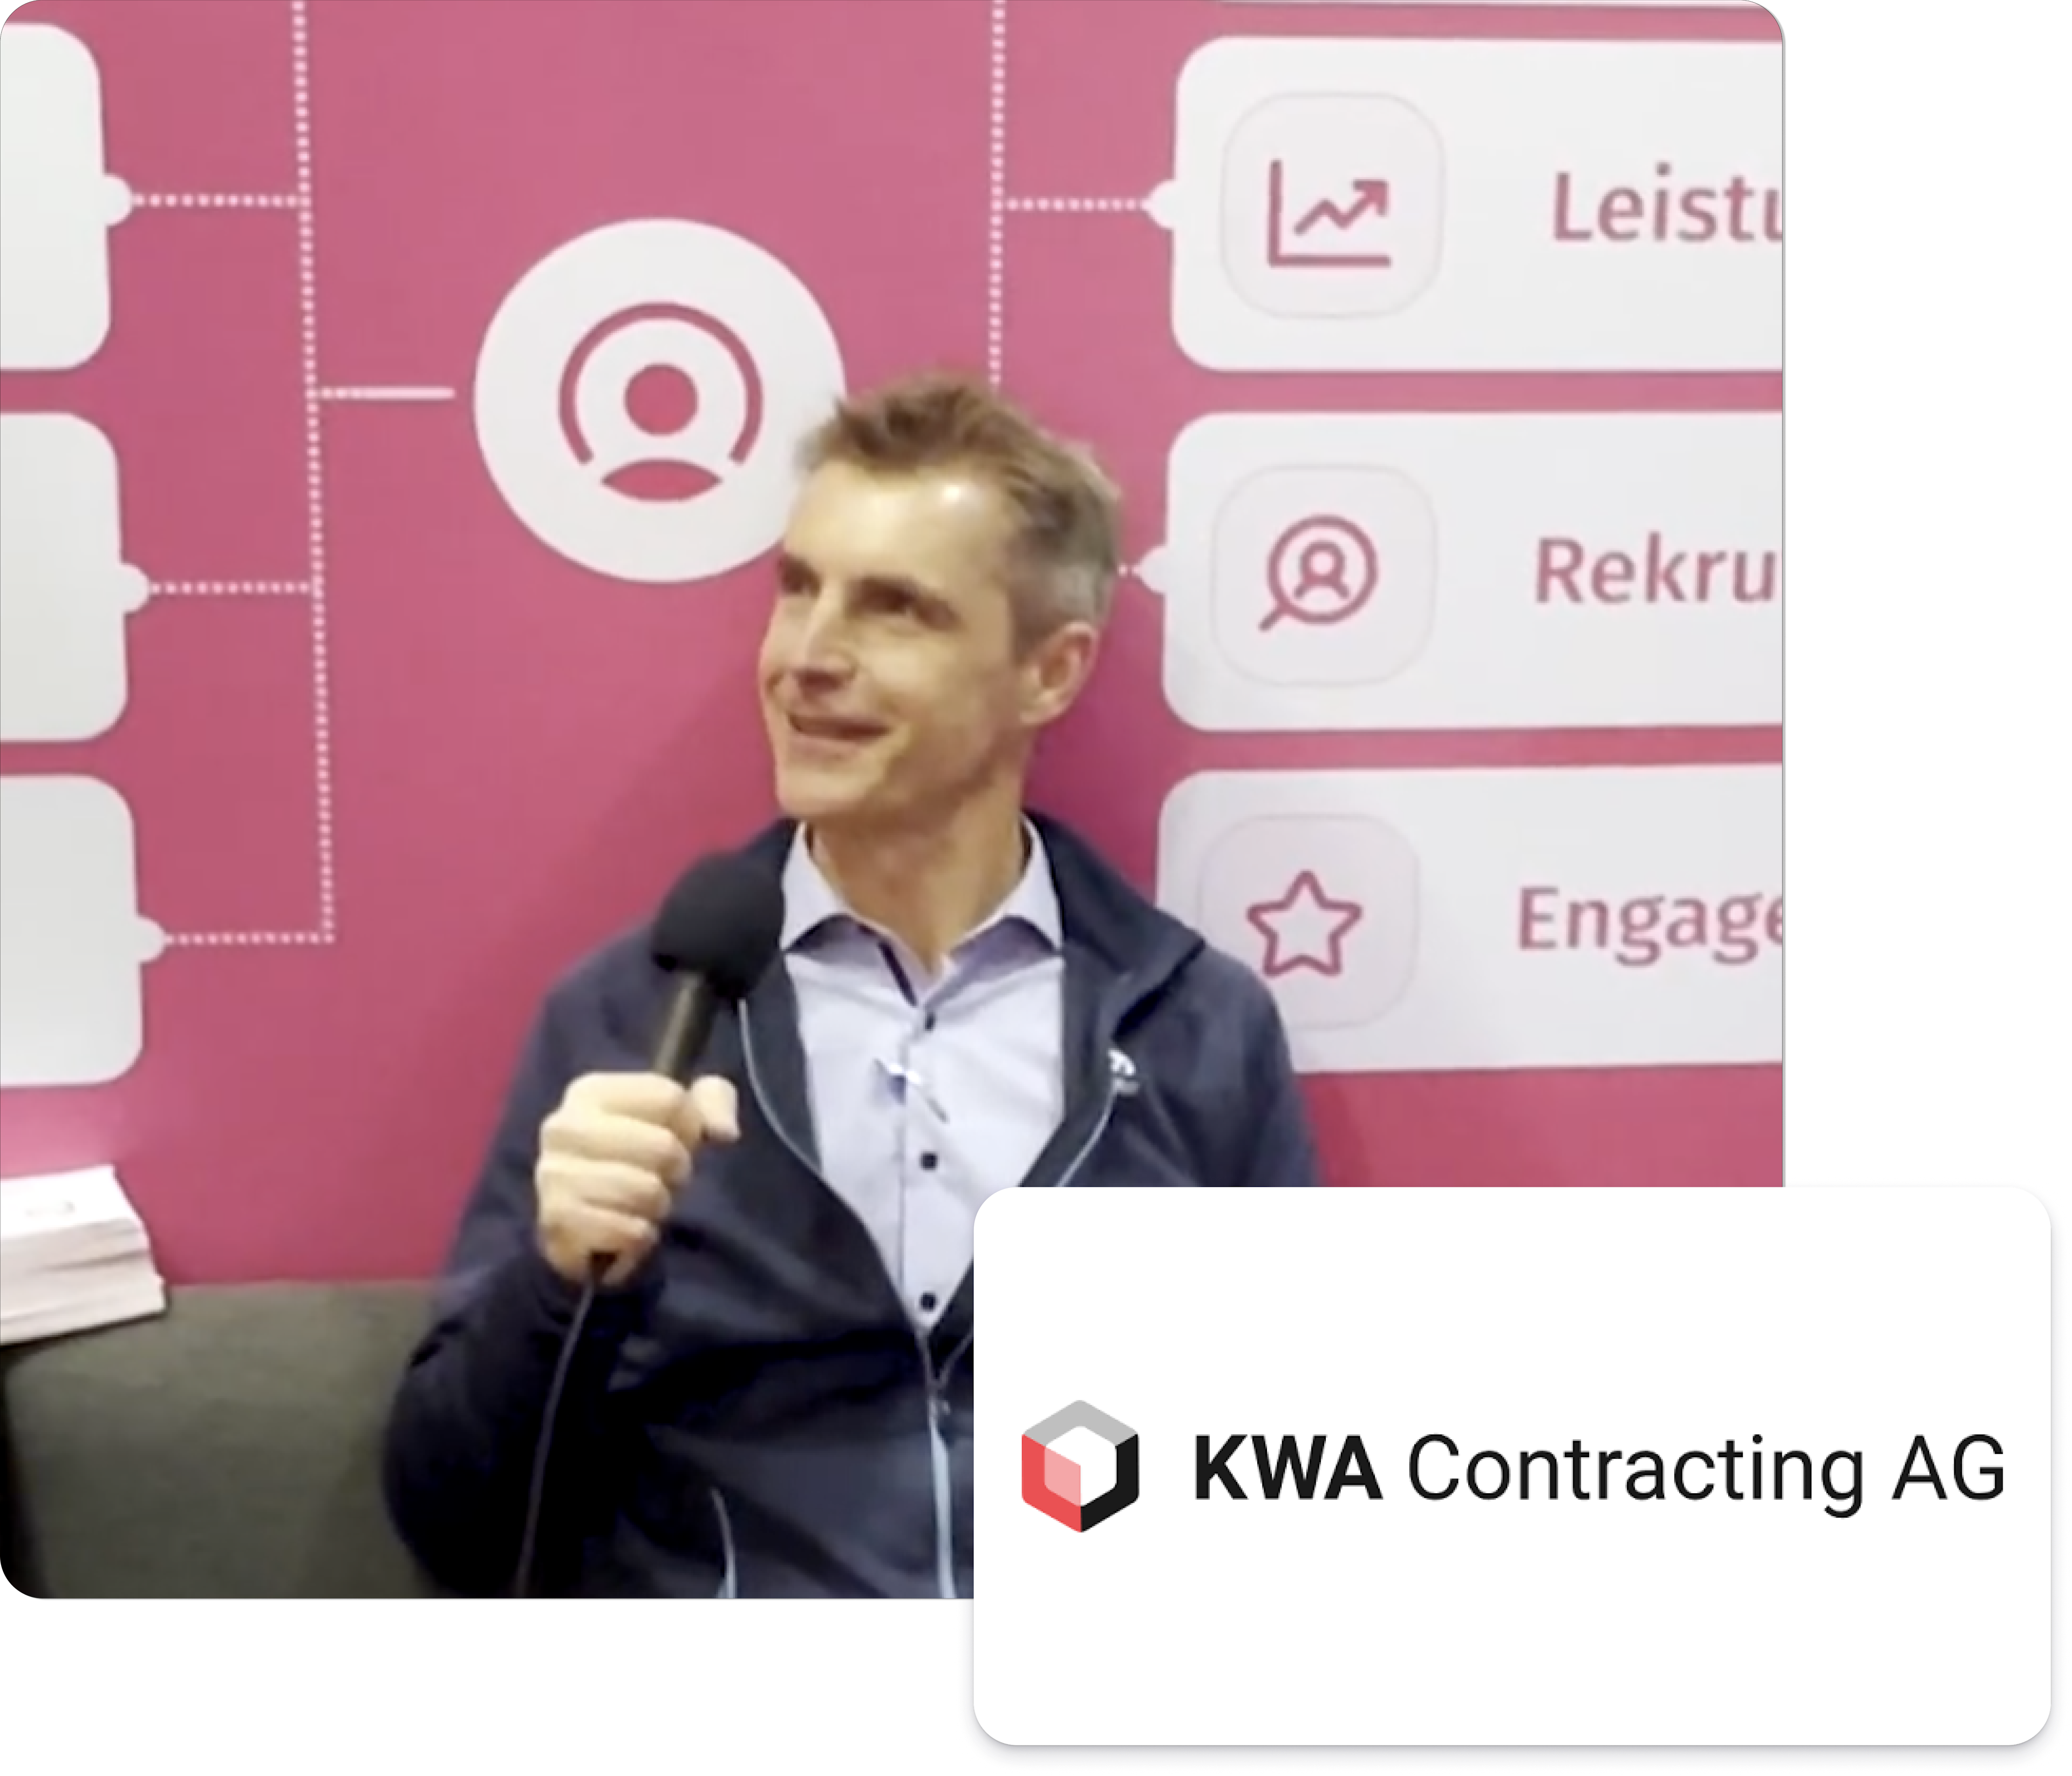 KWA Contracting